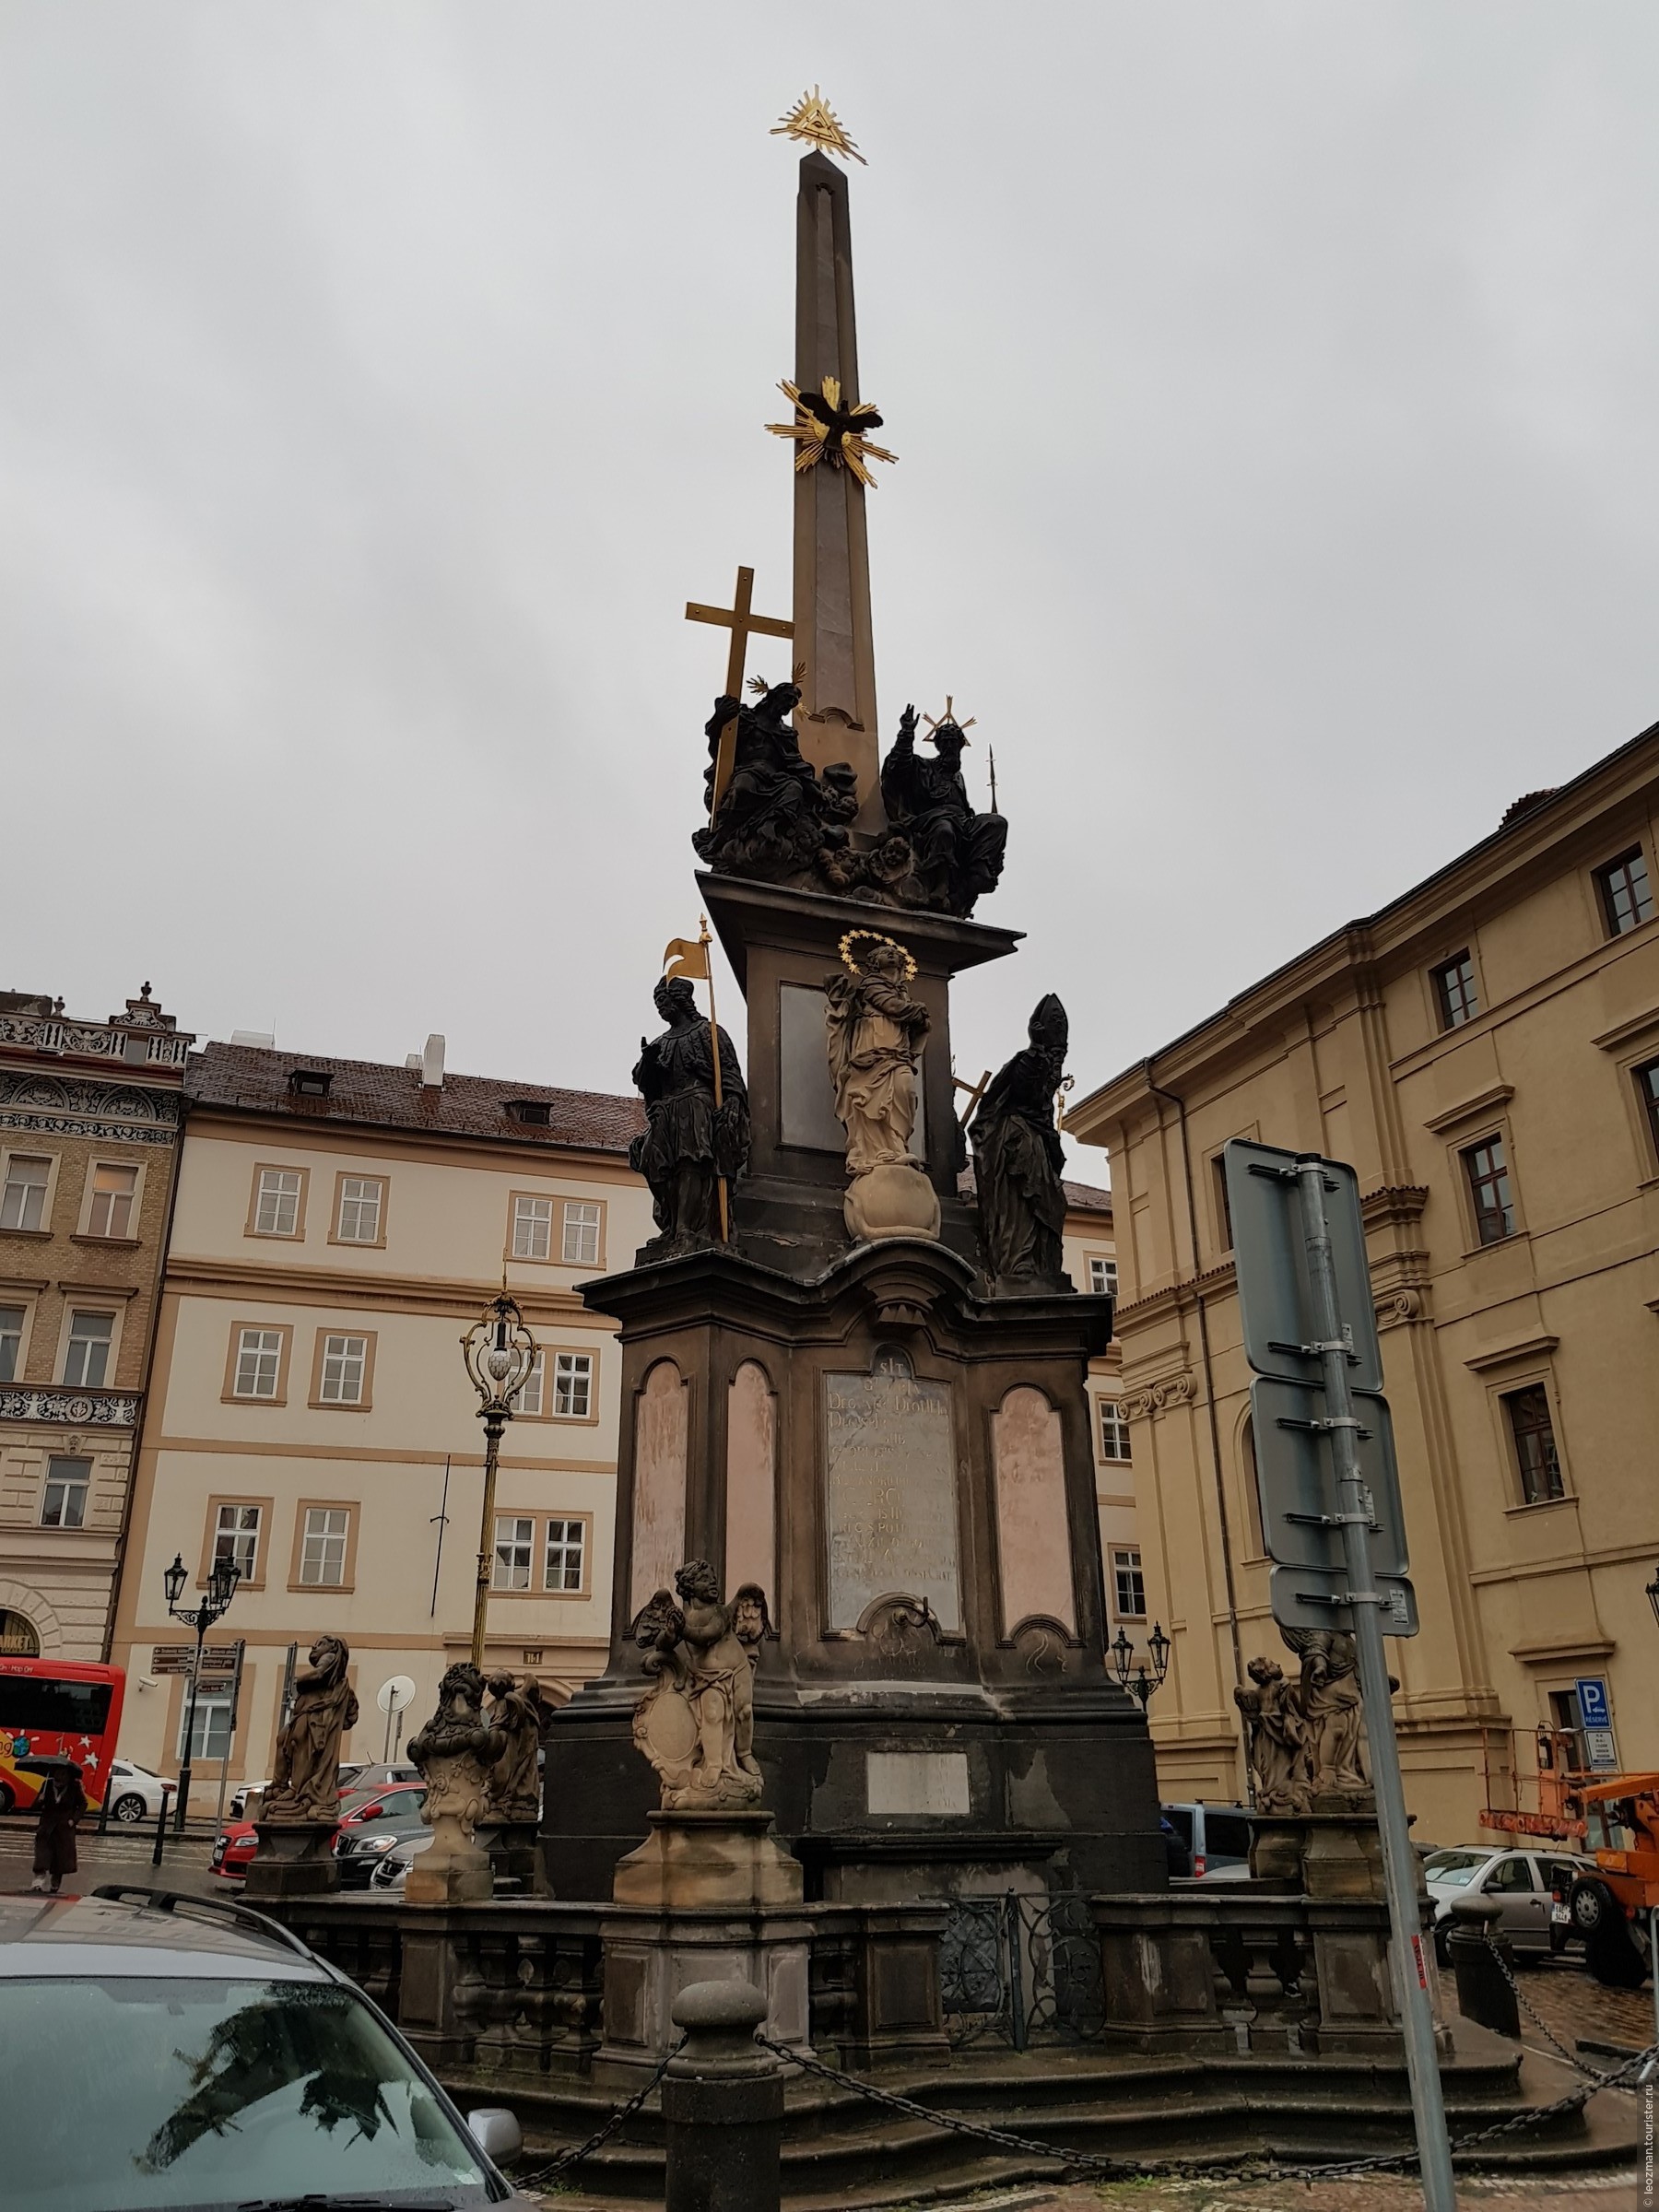 Австрийский город с чумной колонной 4 буквы. Чумная колонна в Праге. Чумной столб в Праге. Моровые столбы в Праге. Чумная колонна (Вена).